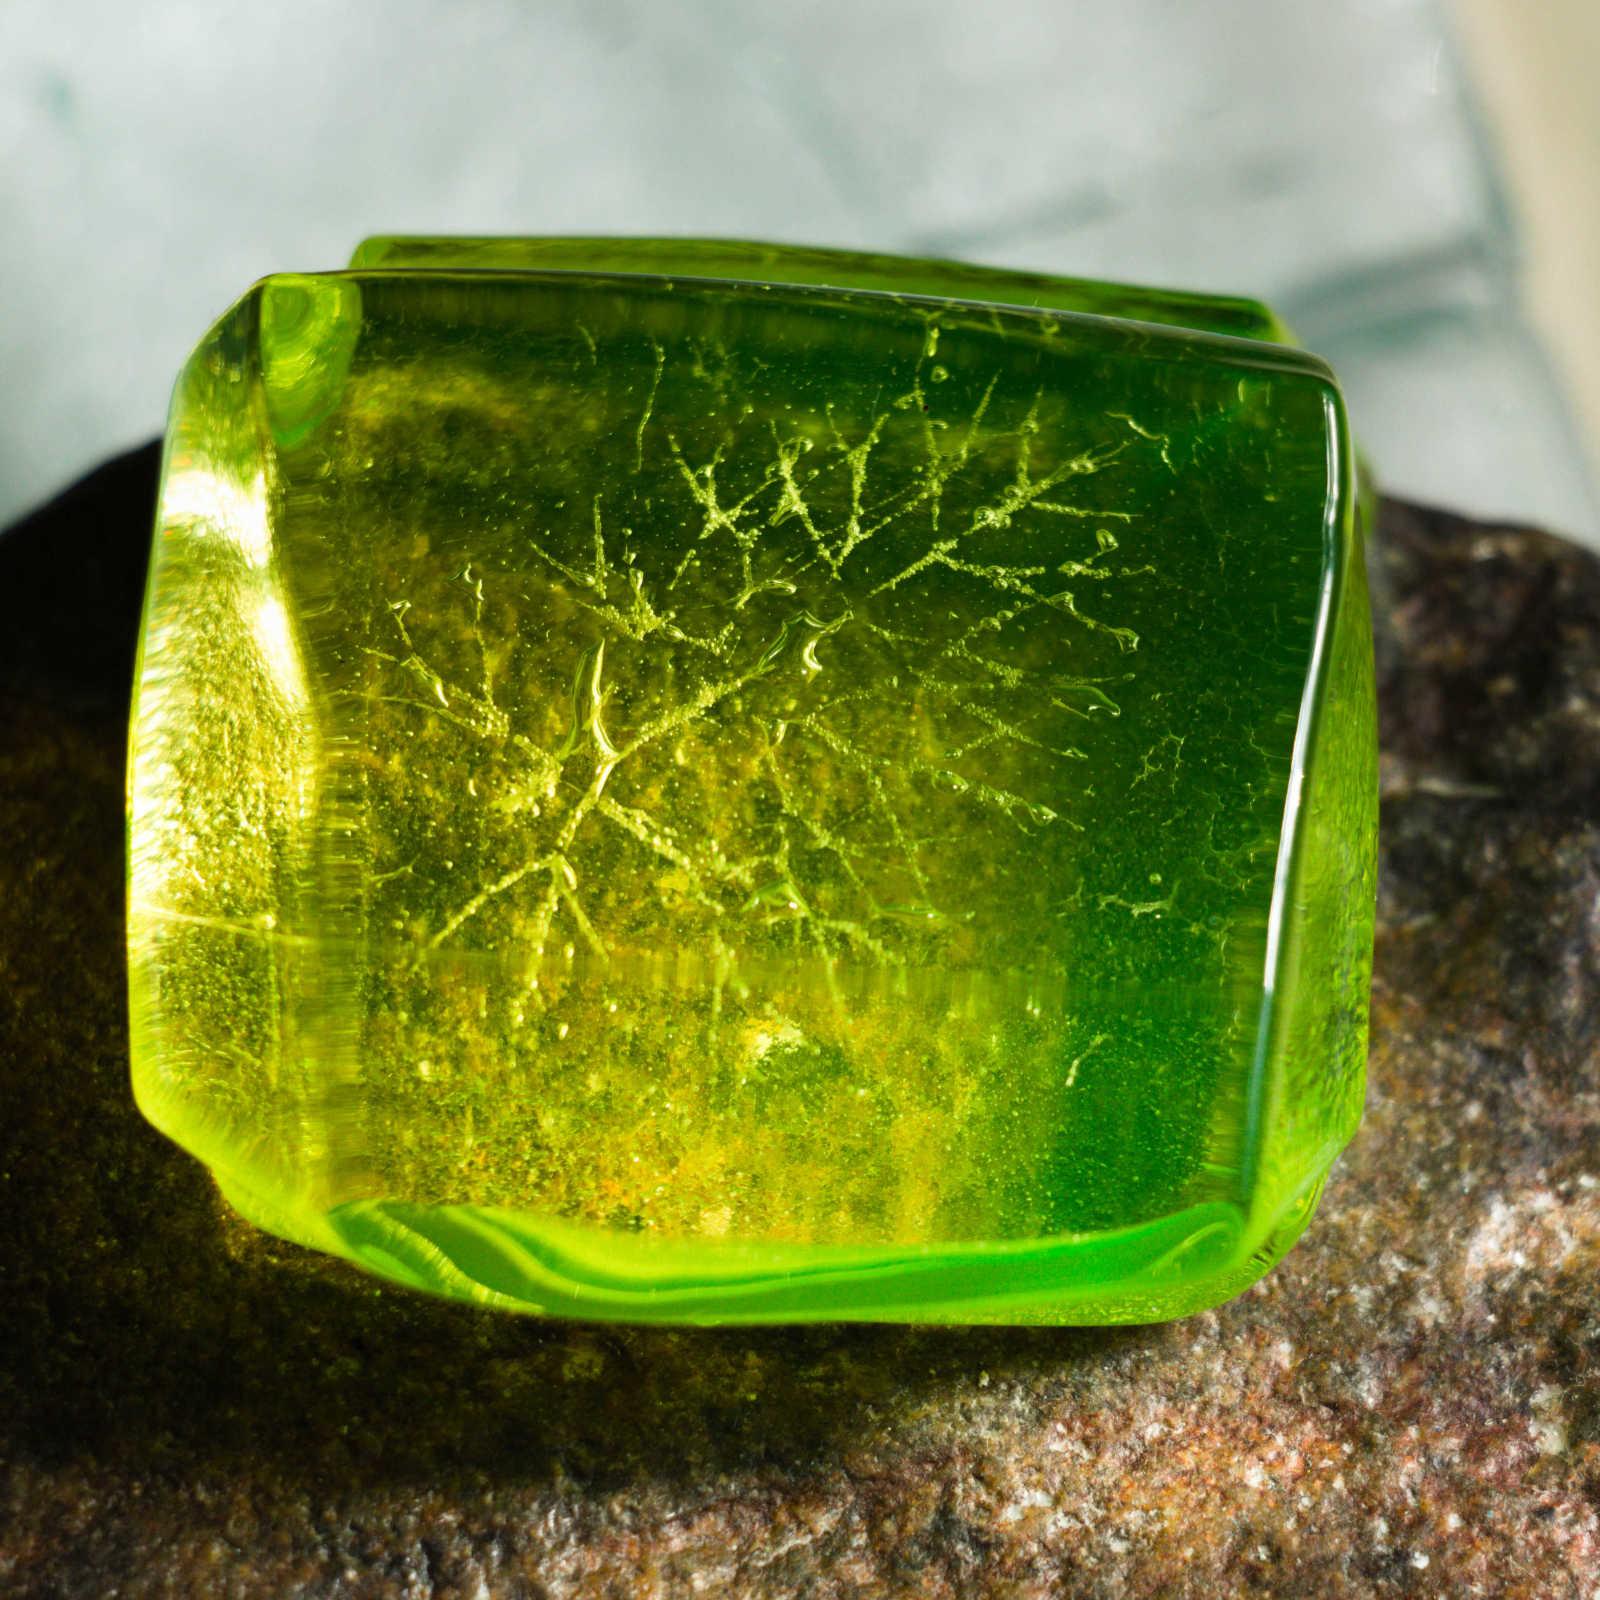 Uranium Glass with fennel leaf impression